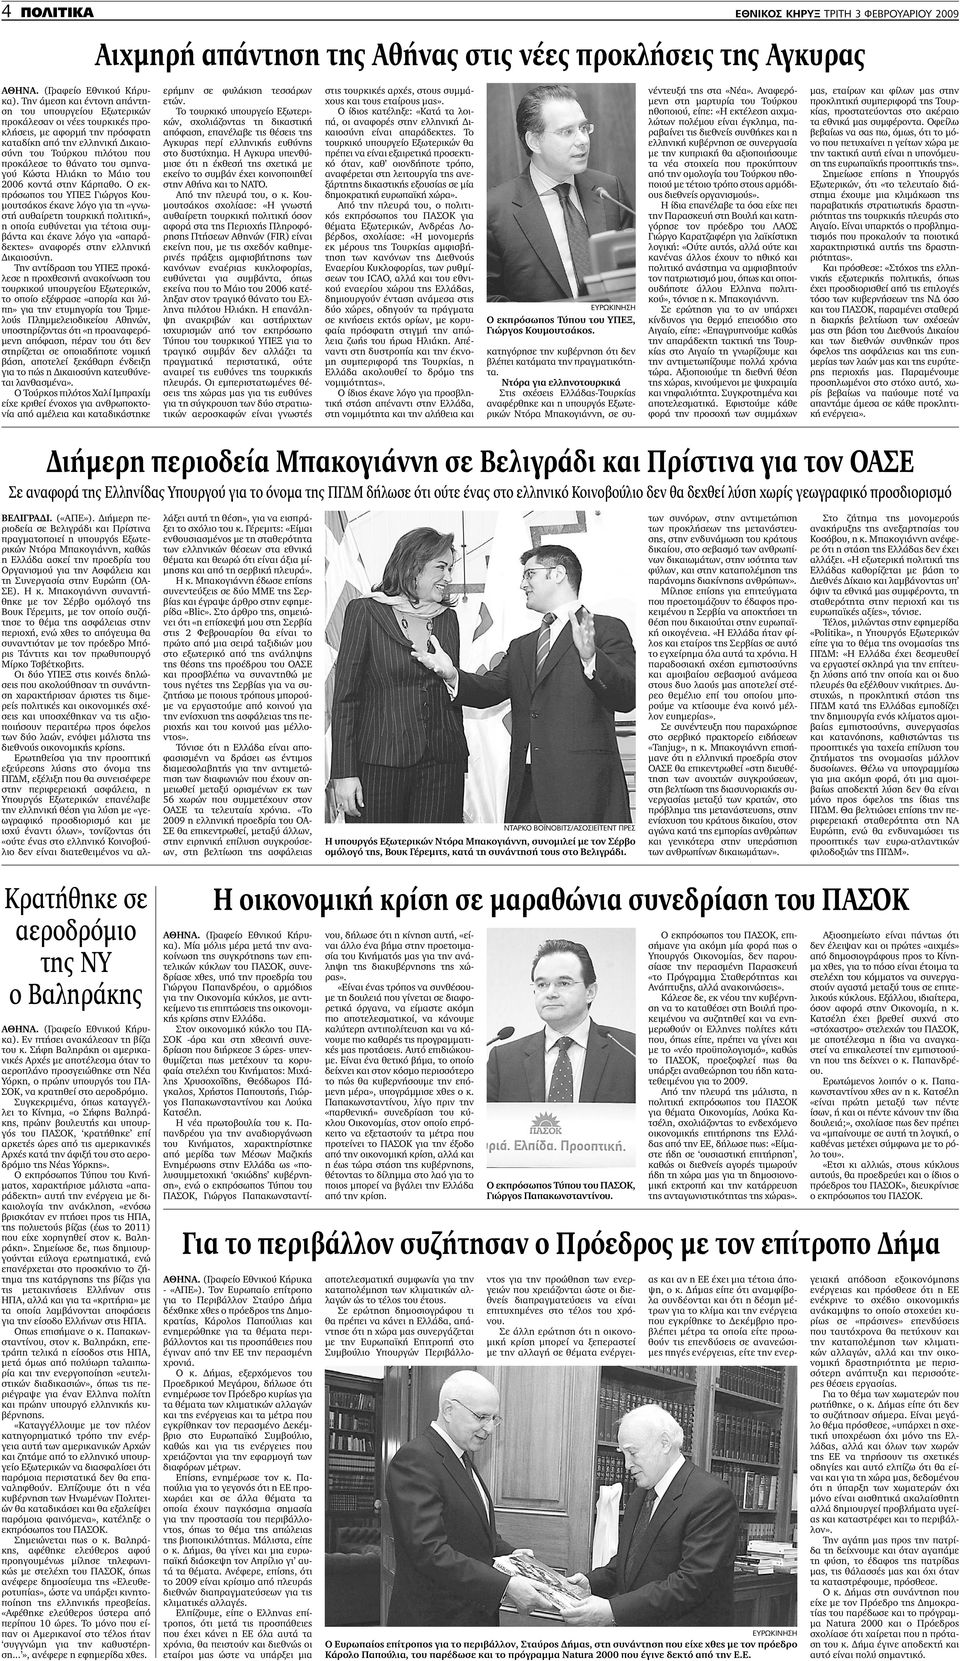 Ο εκπρόσωπος του ΥΠΕΞ Γιώργος Κου- µουτσάκος έκανε λόγο για τη «γνωστή αυθαίρετη τουρκική πολιτική», η οποία ευθύνεται για τέτοια συµβάντα και έκανε λόγο για «απαράδεκτες» αναφορές στην ελληνική